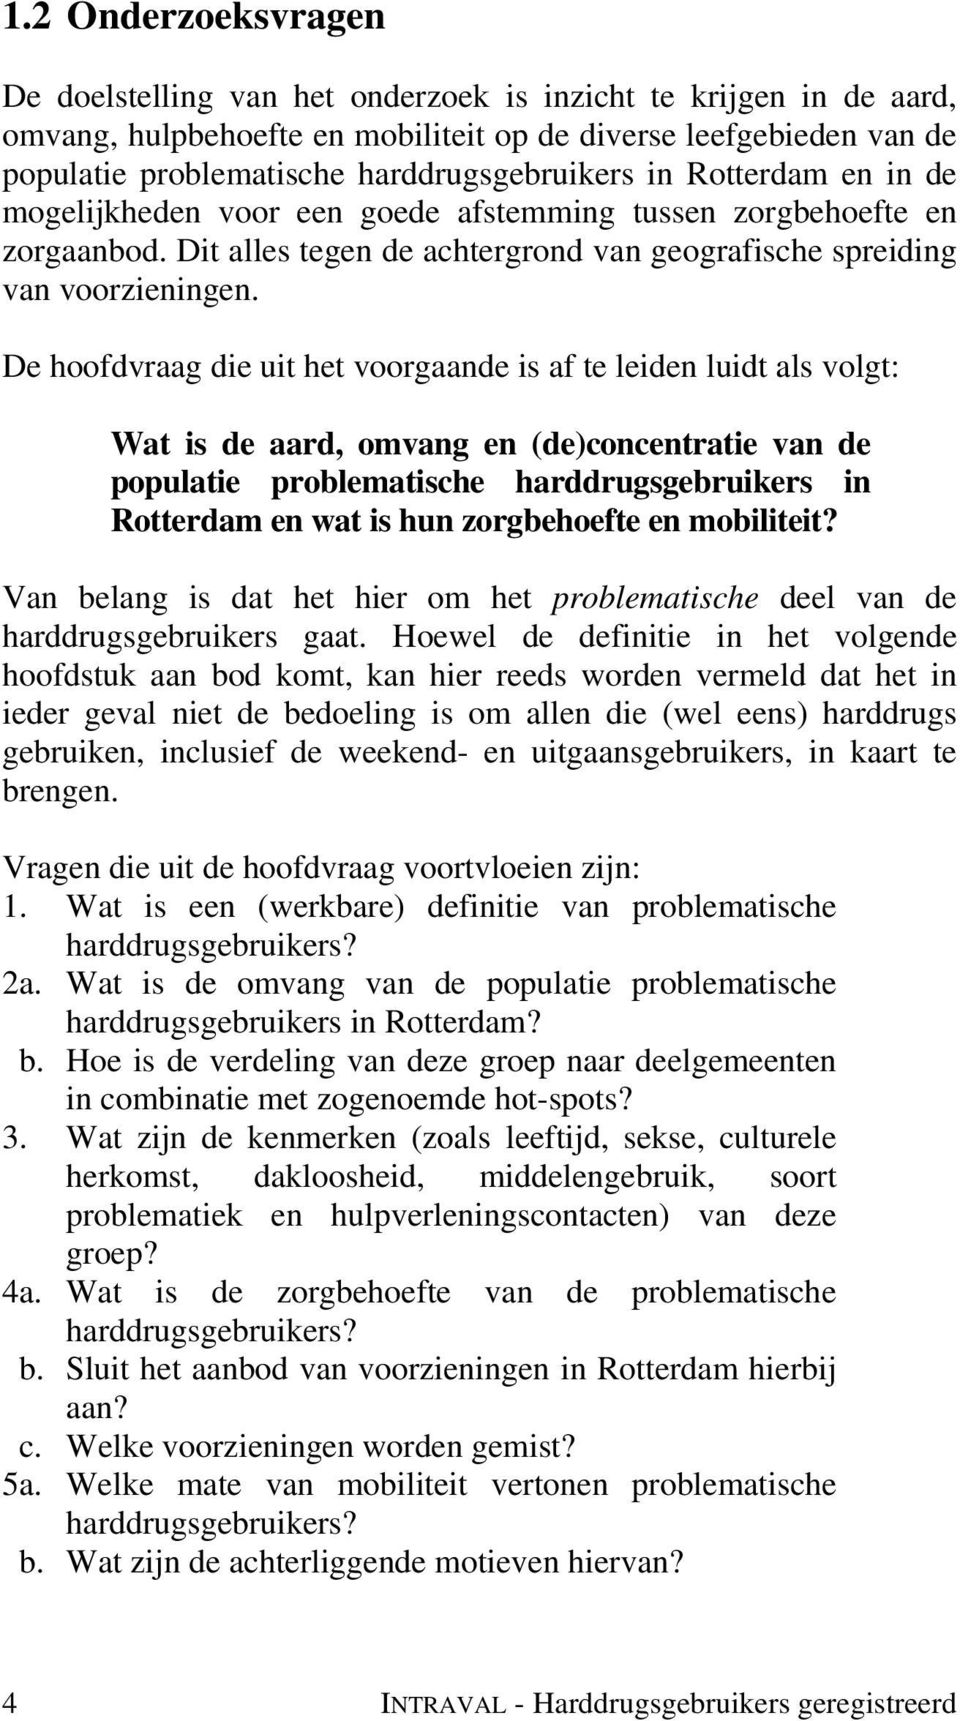 De hoofdvraag die uit het voorgaande is af te leiden luidt als volgt: Wat is de aard, omvang en (de)concentratie van de populatie problematische harddrugsgebruikers in Rotterdam en wat is hun